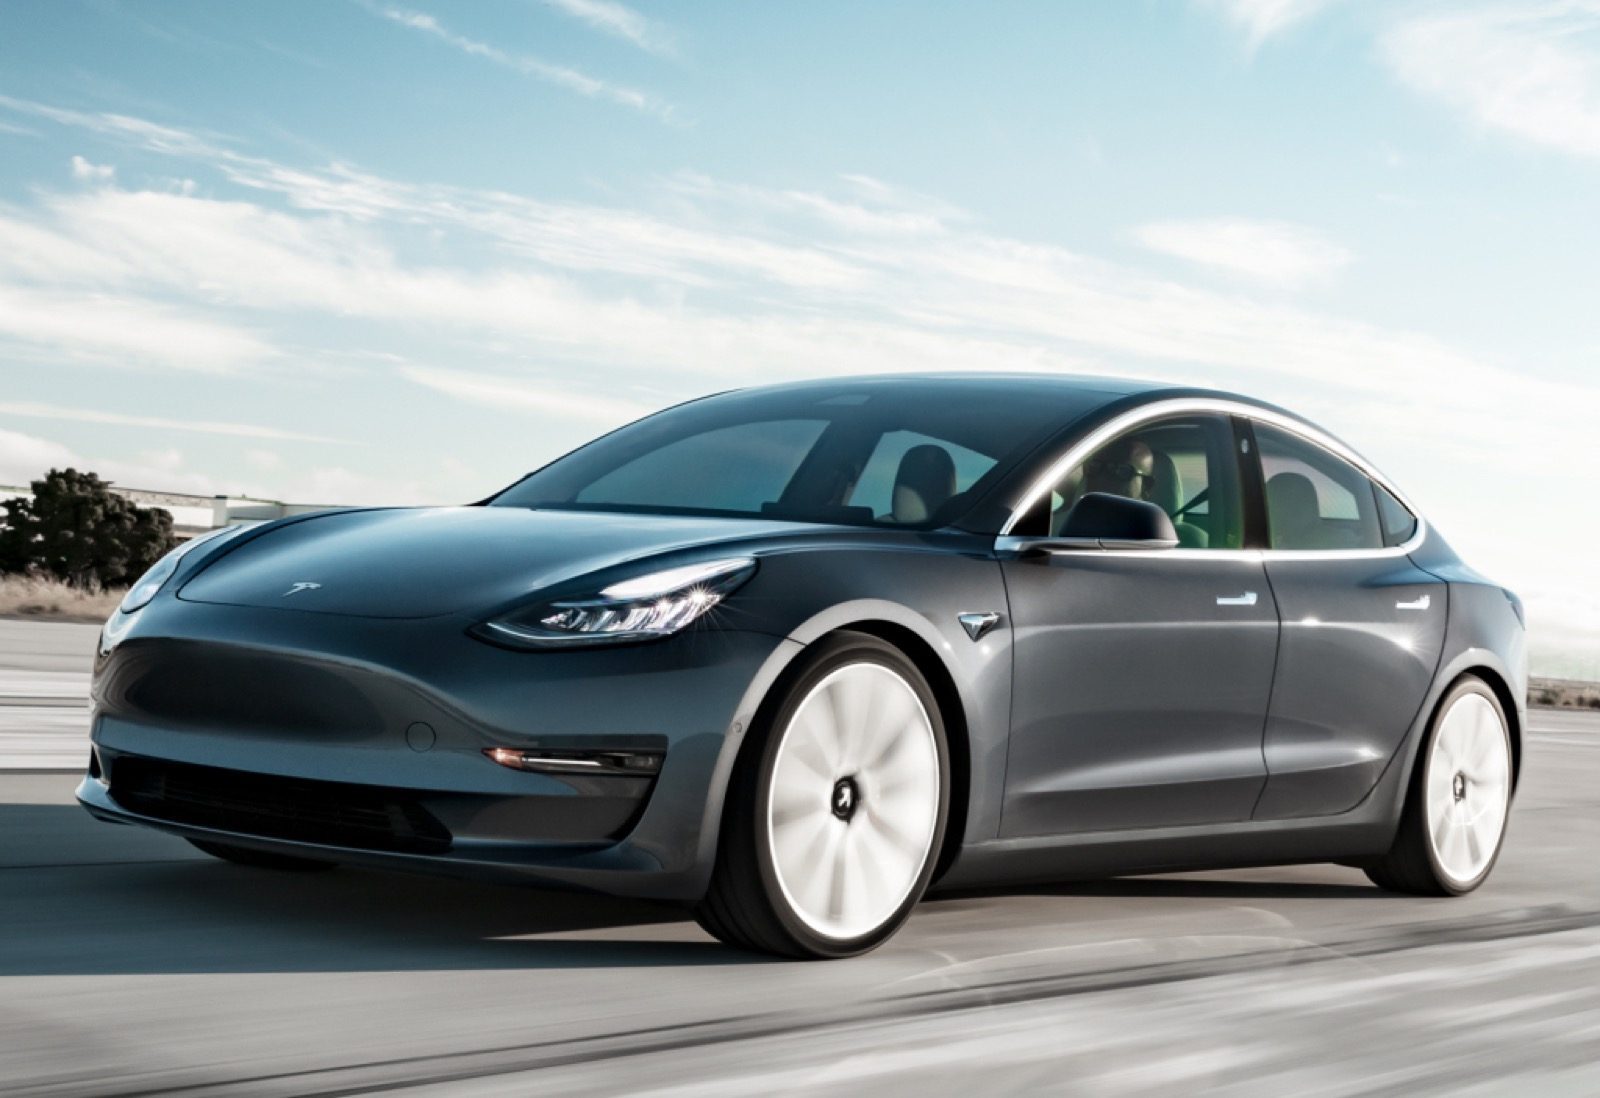 Onbevredigend Zegevieren Zeebrasem Autoverkopen september 2020: Tesla delft onderspit! - Autoblog.nl